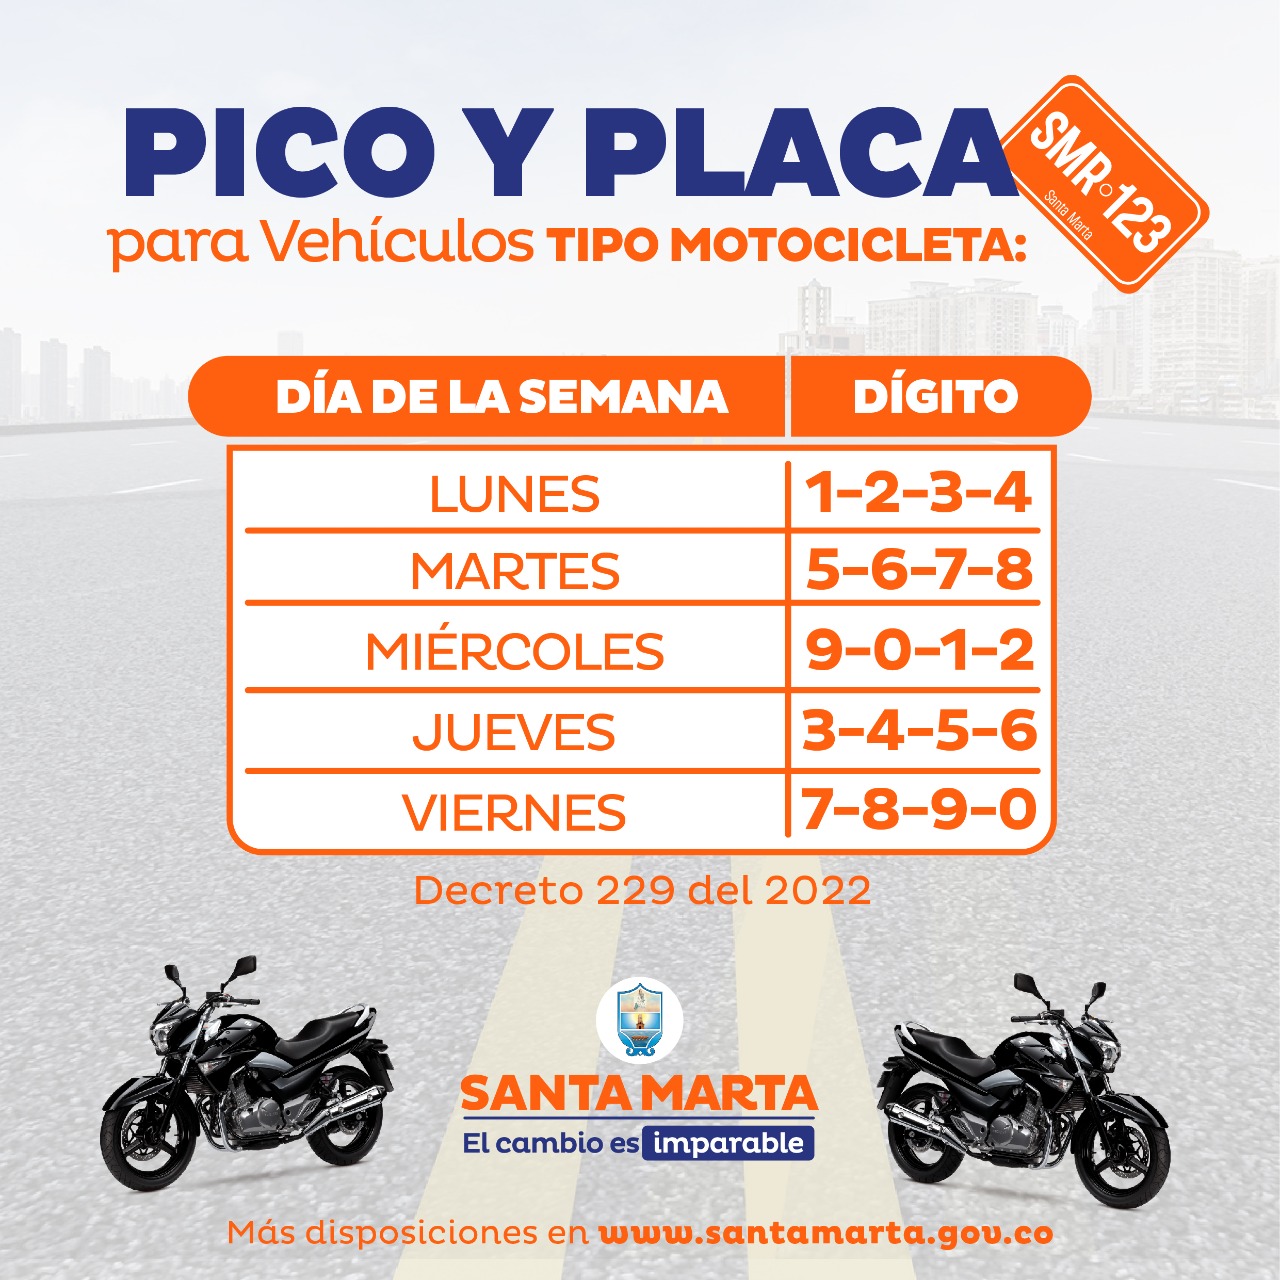 Samario ten en cuenta el “Pico y Placa” vigente para motocicletas